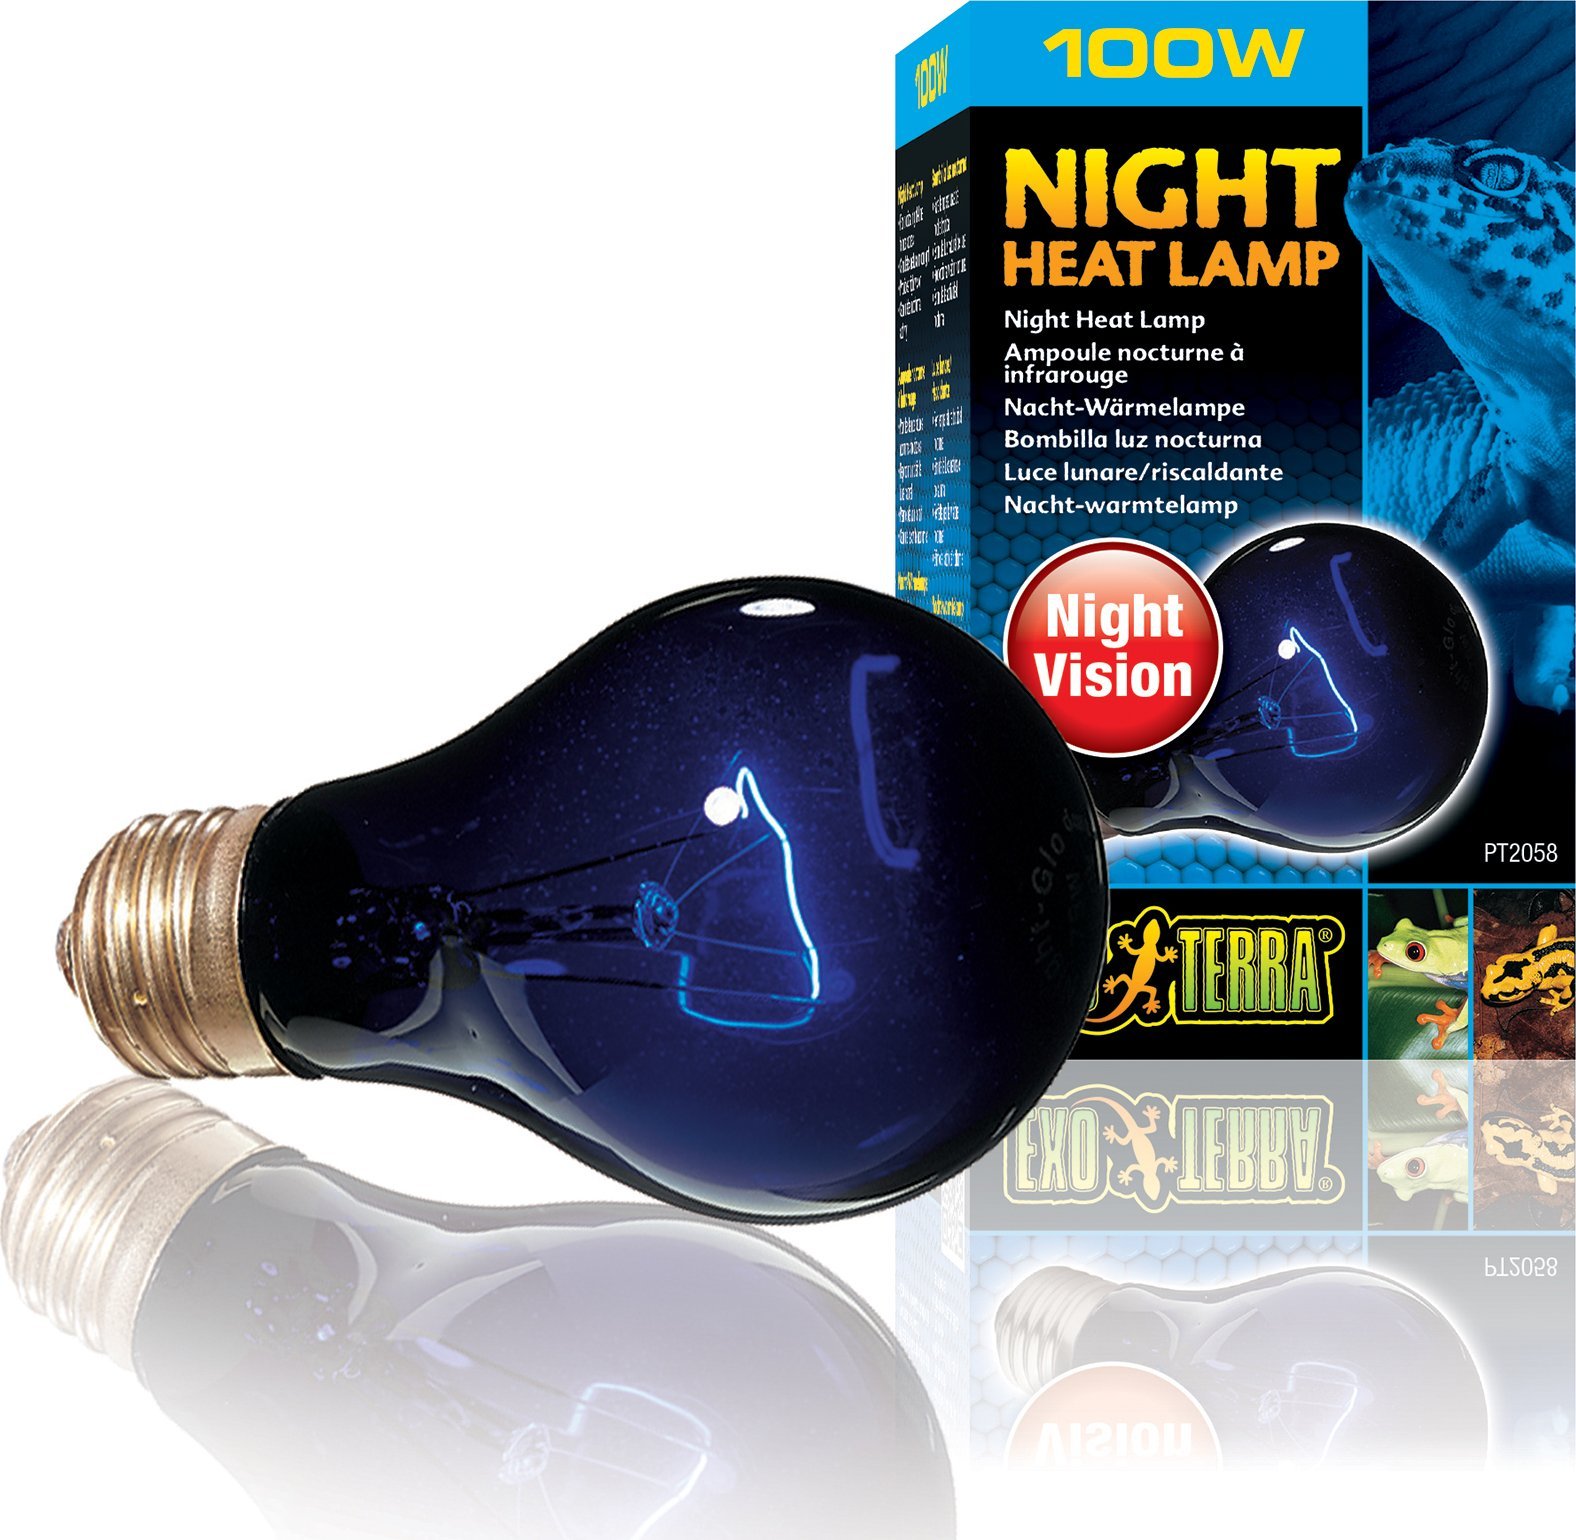 Exo Terra Zarowka Night Heat Lamp, 100W EX-0583 (015561220583)